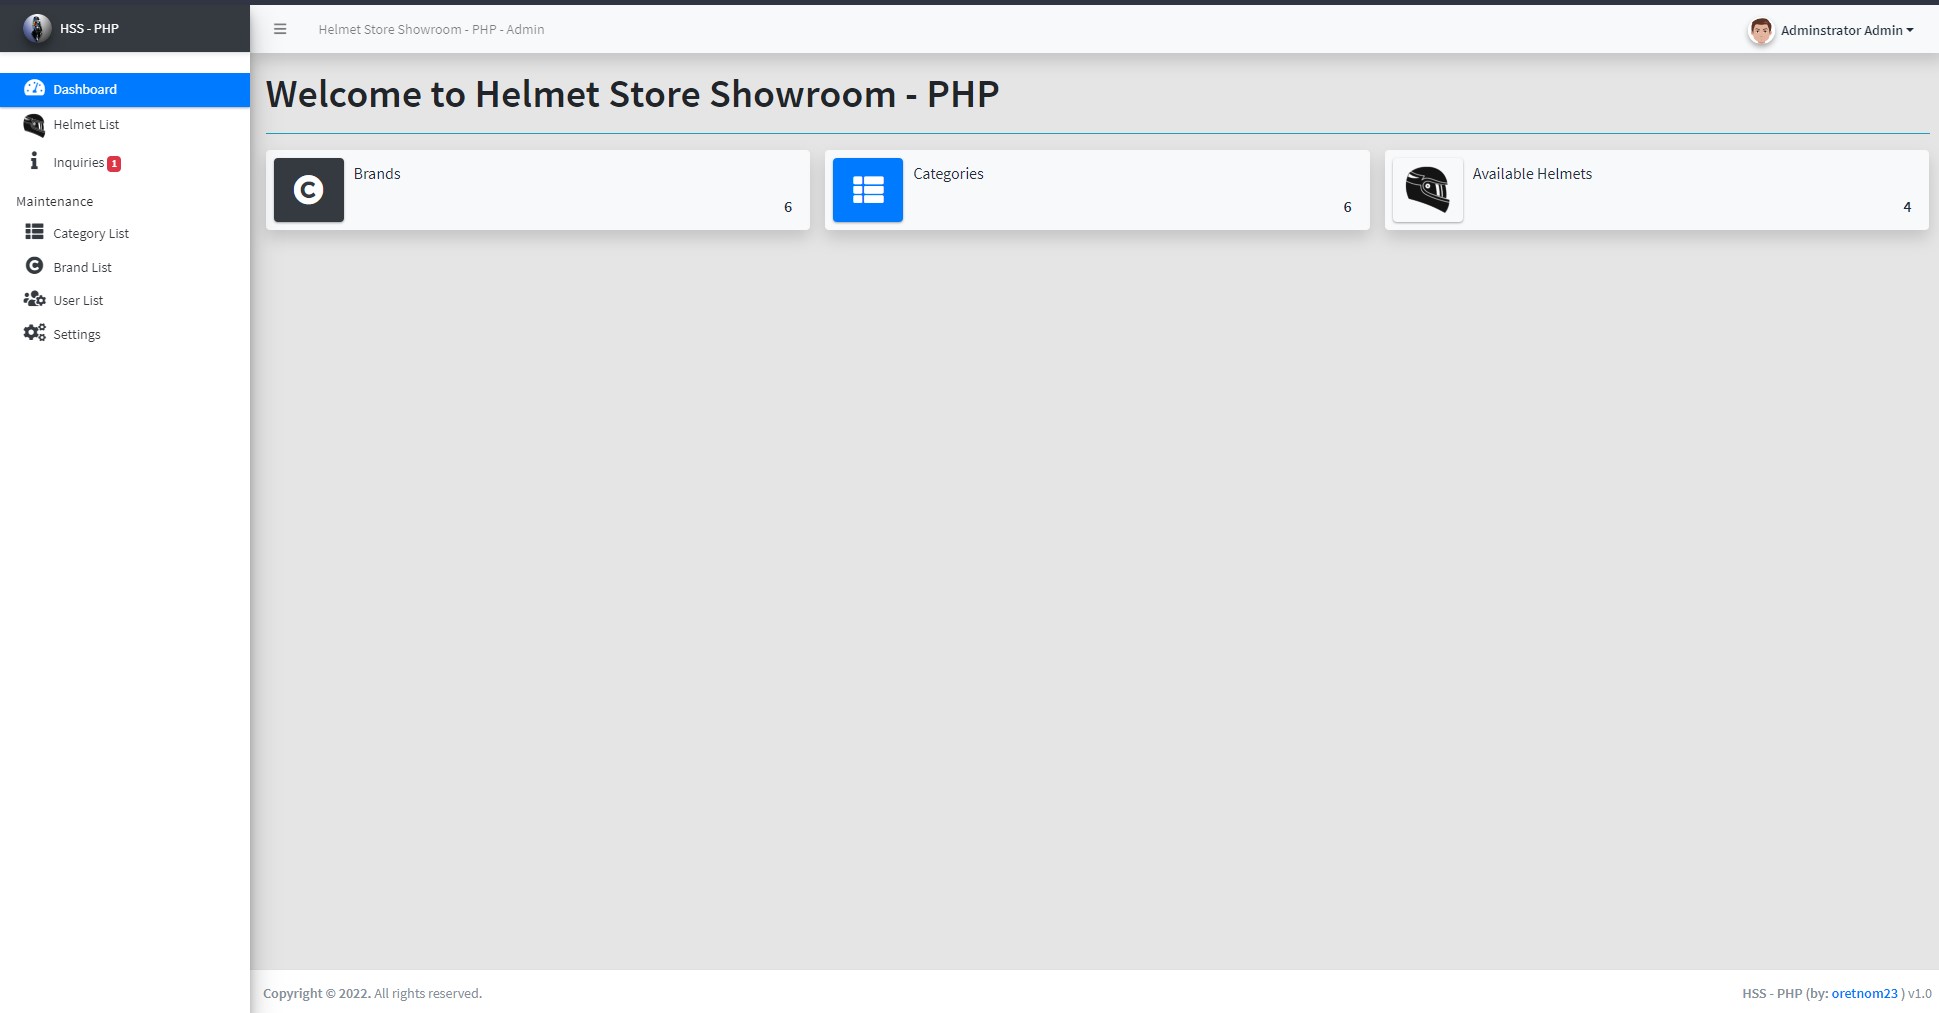 Helmet Store's Showroom Site - Admin Dashboard